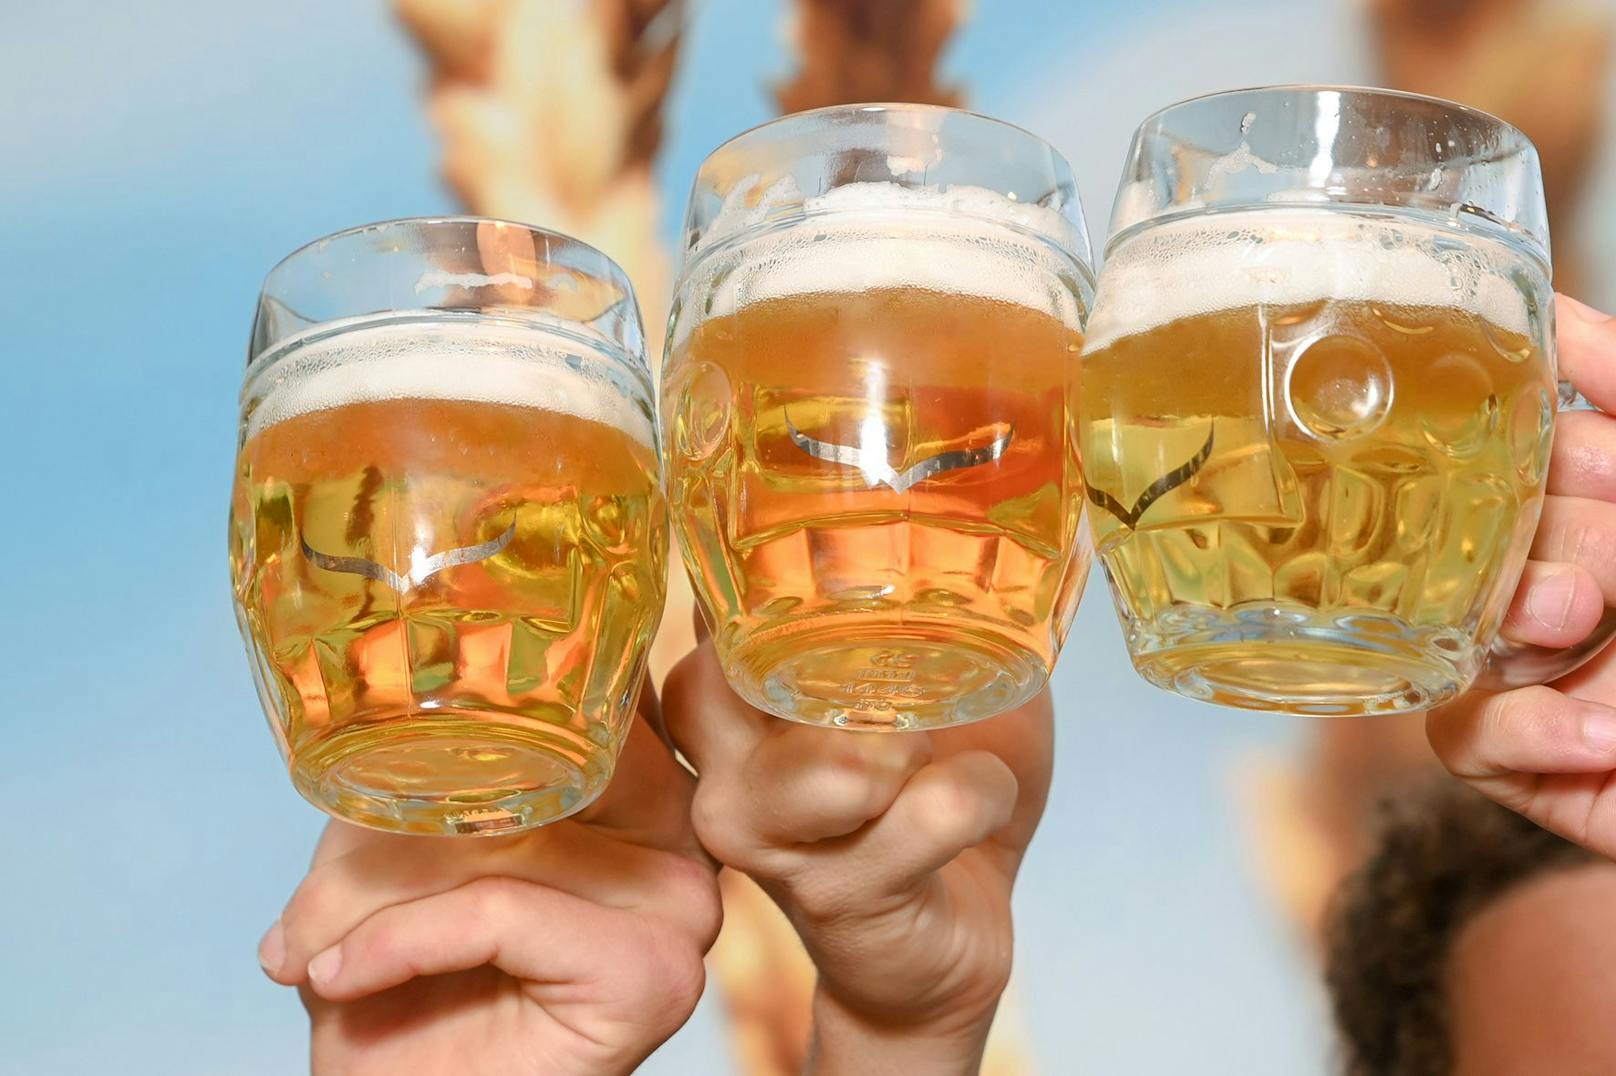 Der Bierpreis steigt, auch am Linzer Urfahrmarkt gibt es die Halbe nicht mehr unter 6 Euro.